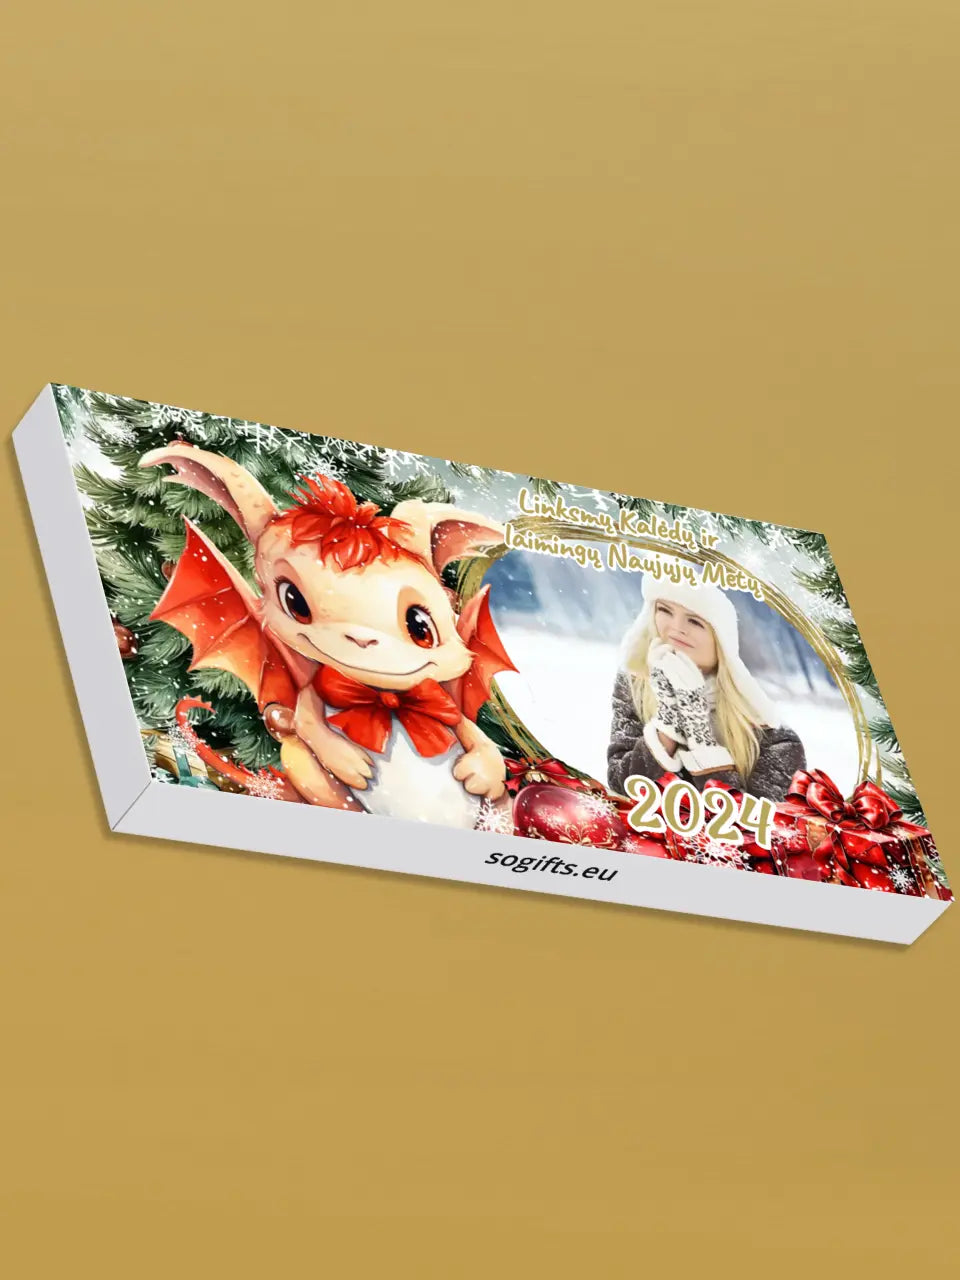 Personalizuotas "Kalėdinis dizainas 6“ šokoladas su jūsų nuotrauka